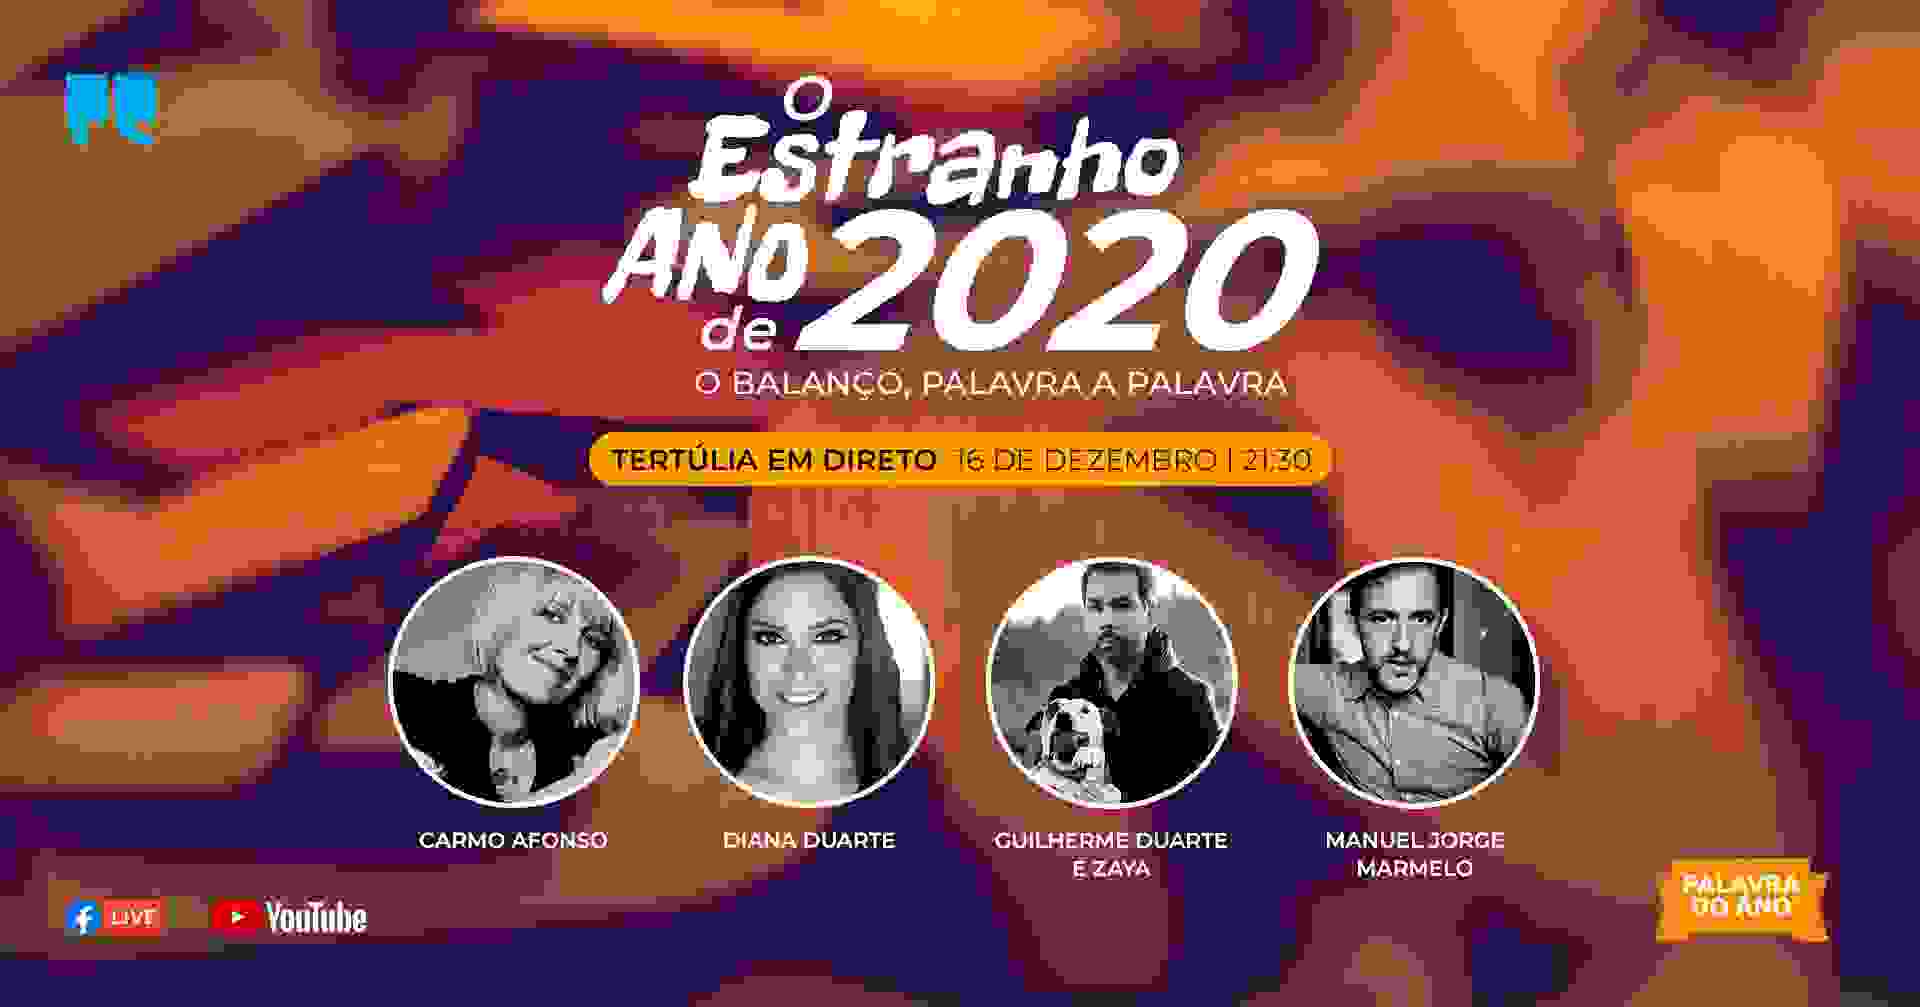 Carmo Afonso, Diana Duarte, Guilherme Duarte, com a Zaya, e Manuel Jorge Marmelo fazem balanço de 2020